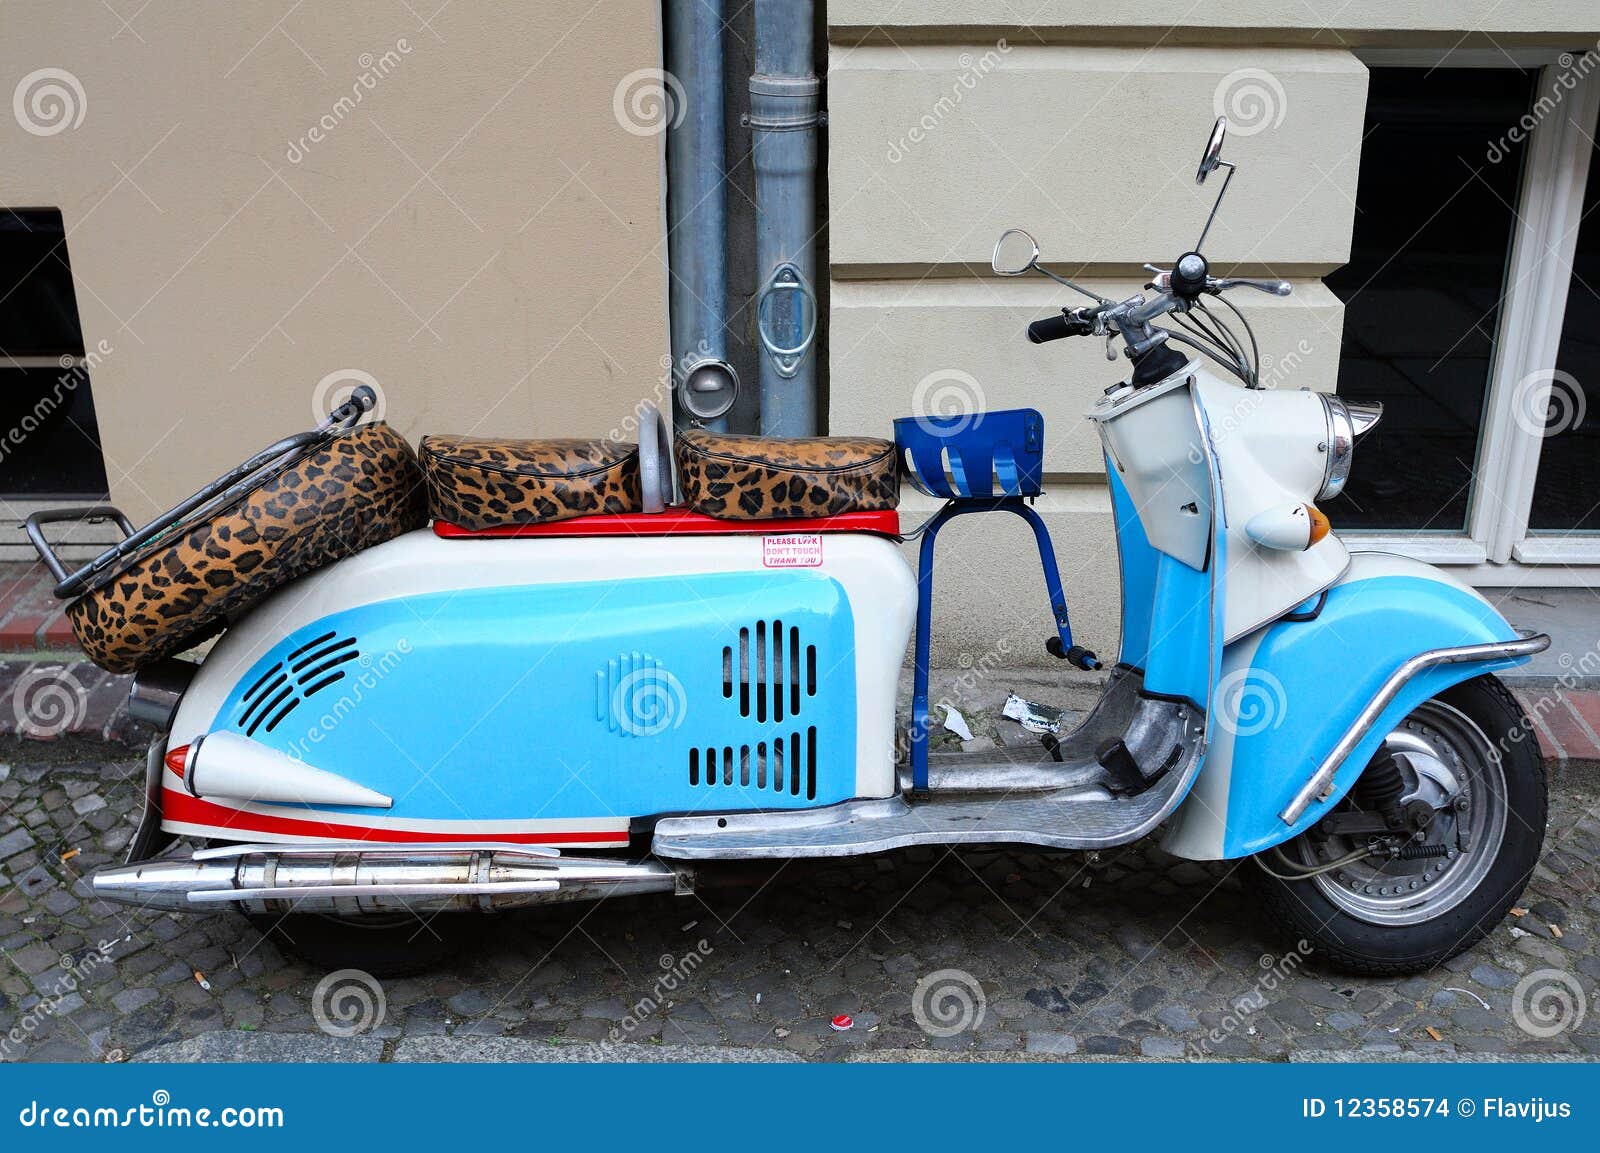 vintage motor scooter 12358574